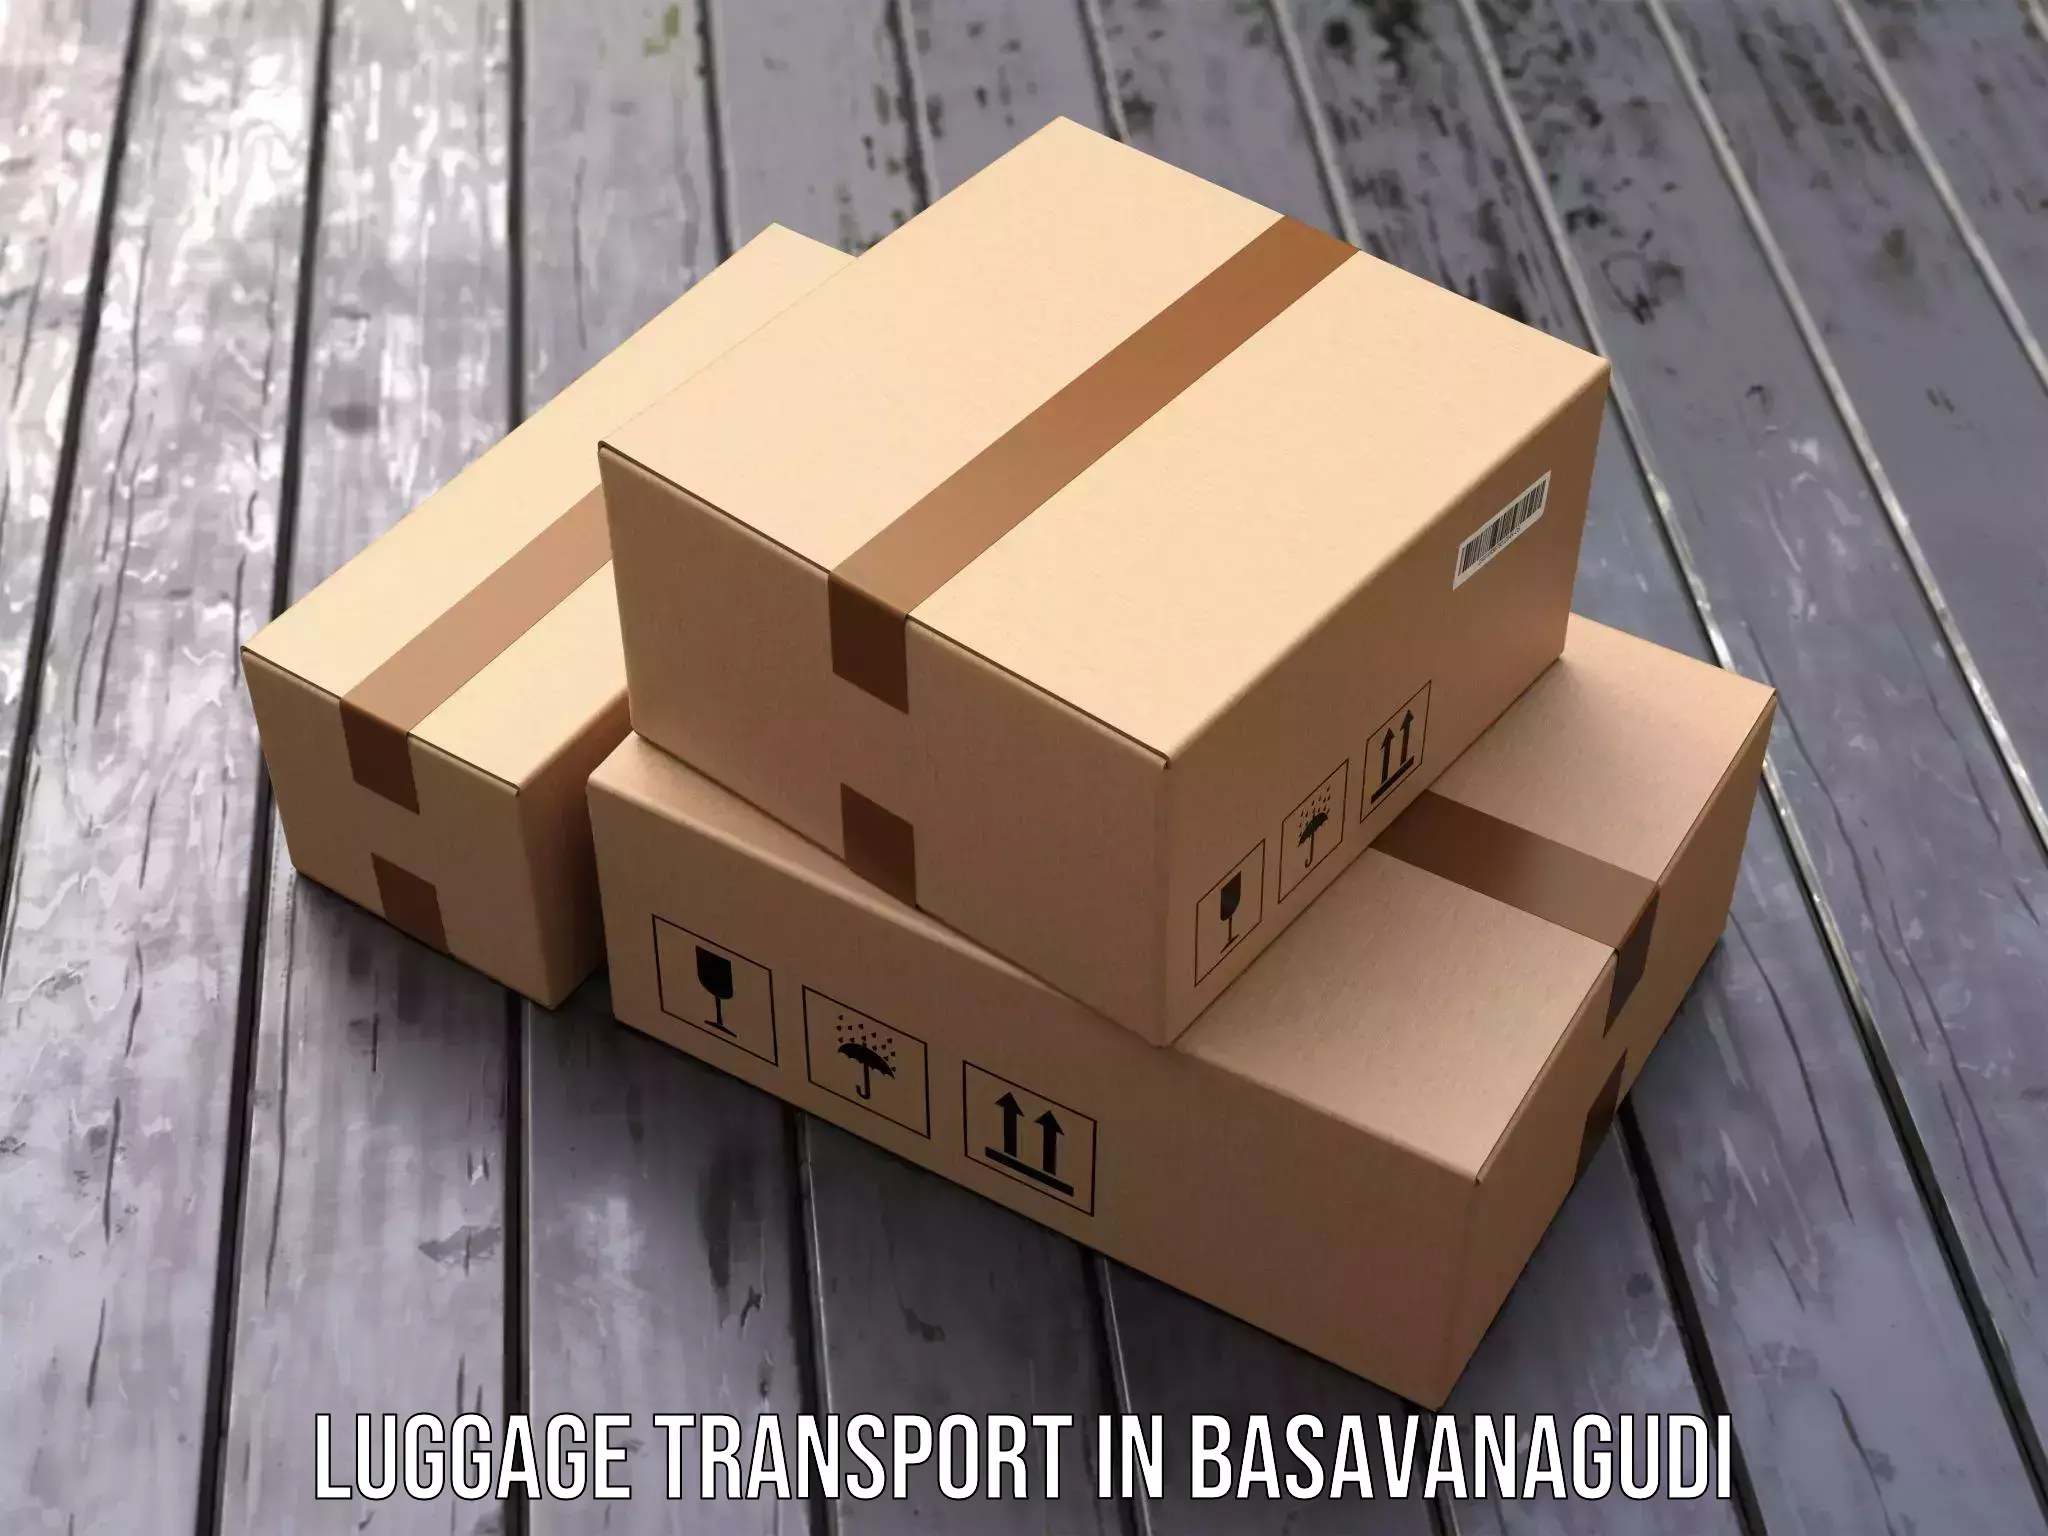 Corporate baggage transport in Basavanagudi